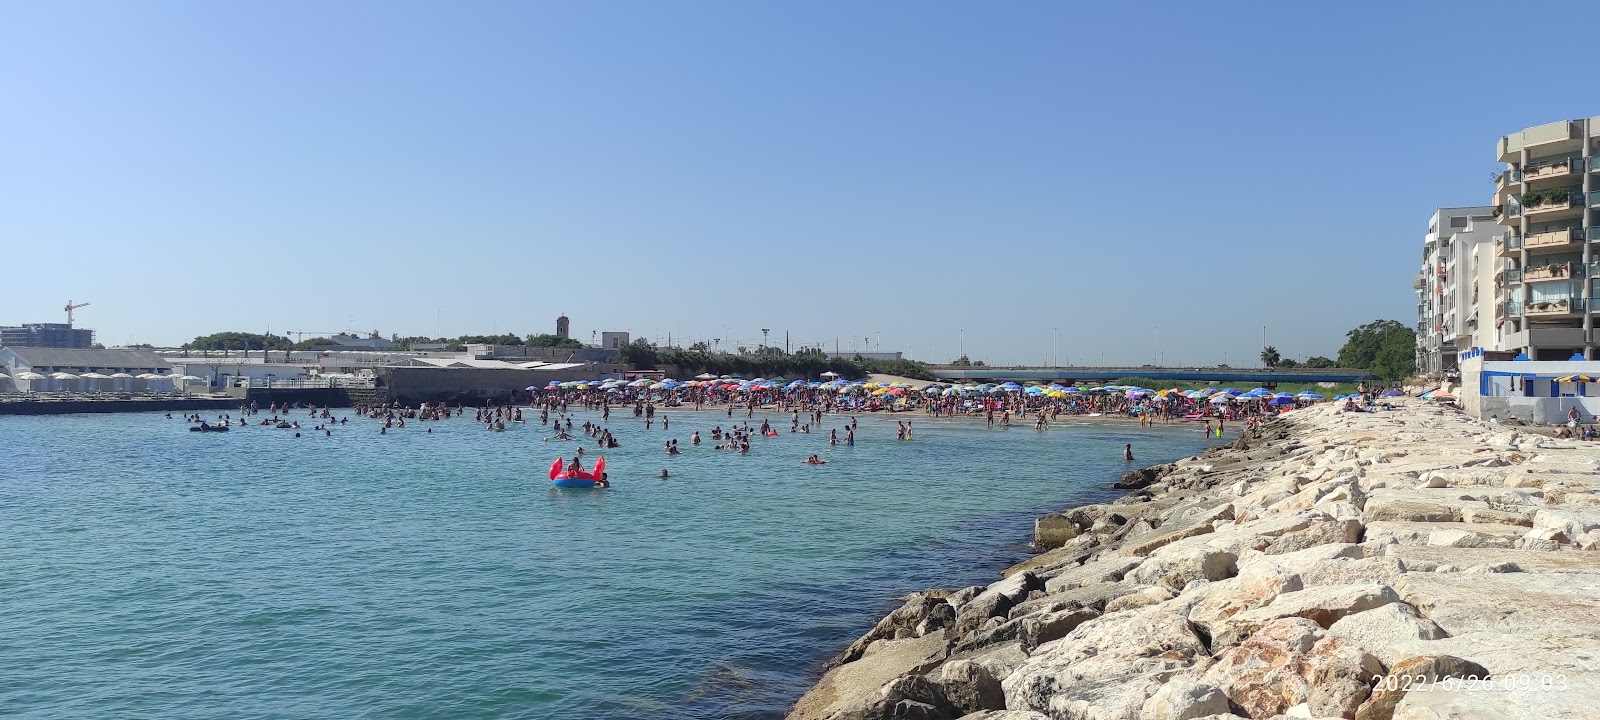 Fotografija Spiaggia del Canalone z prostorna obala